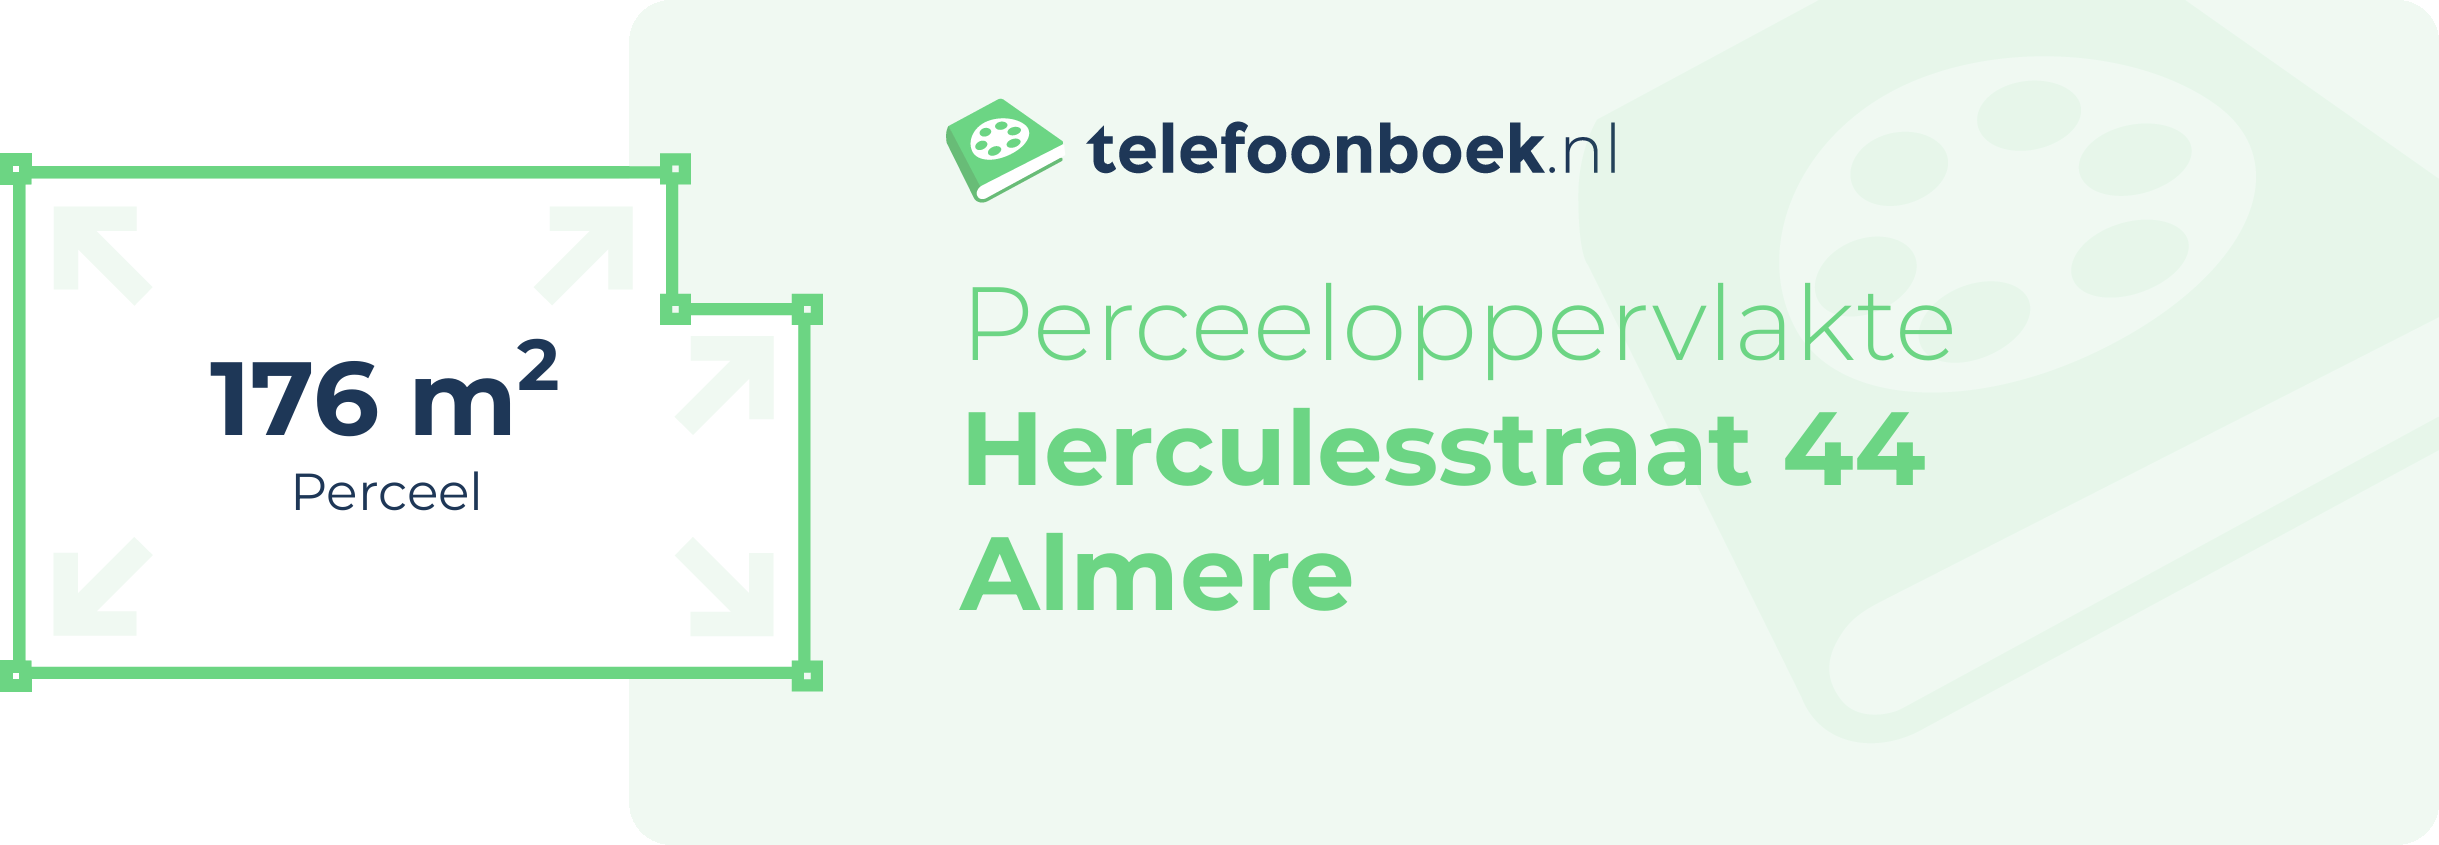 Perceeloppervlakte Herculesstraat 44 Almere